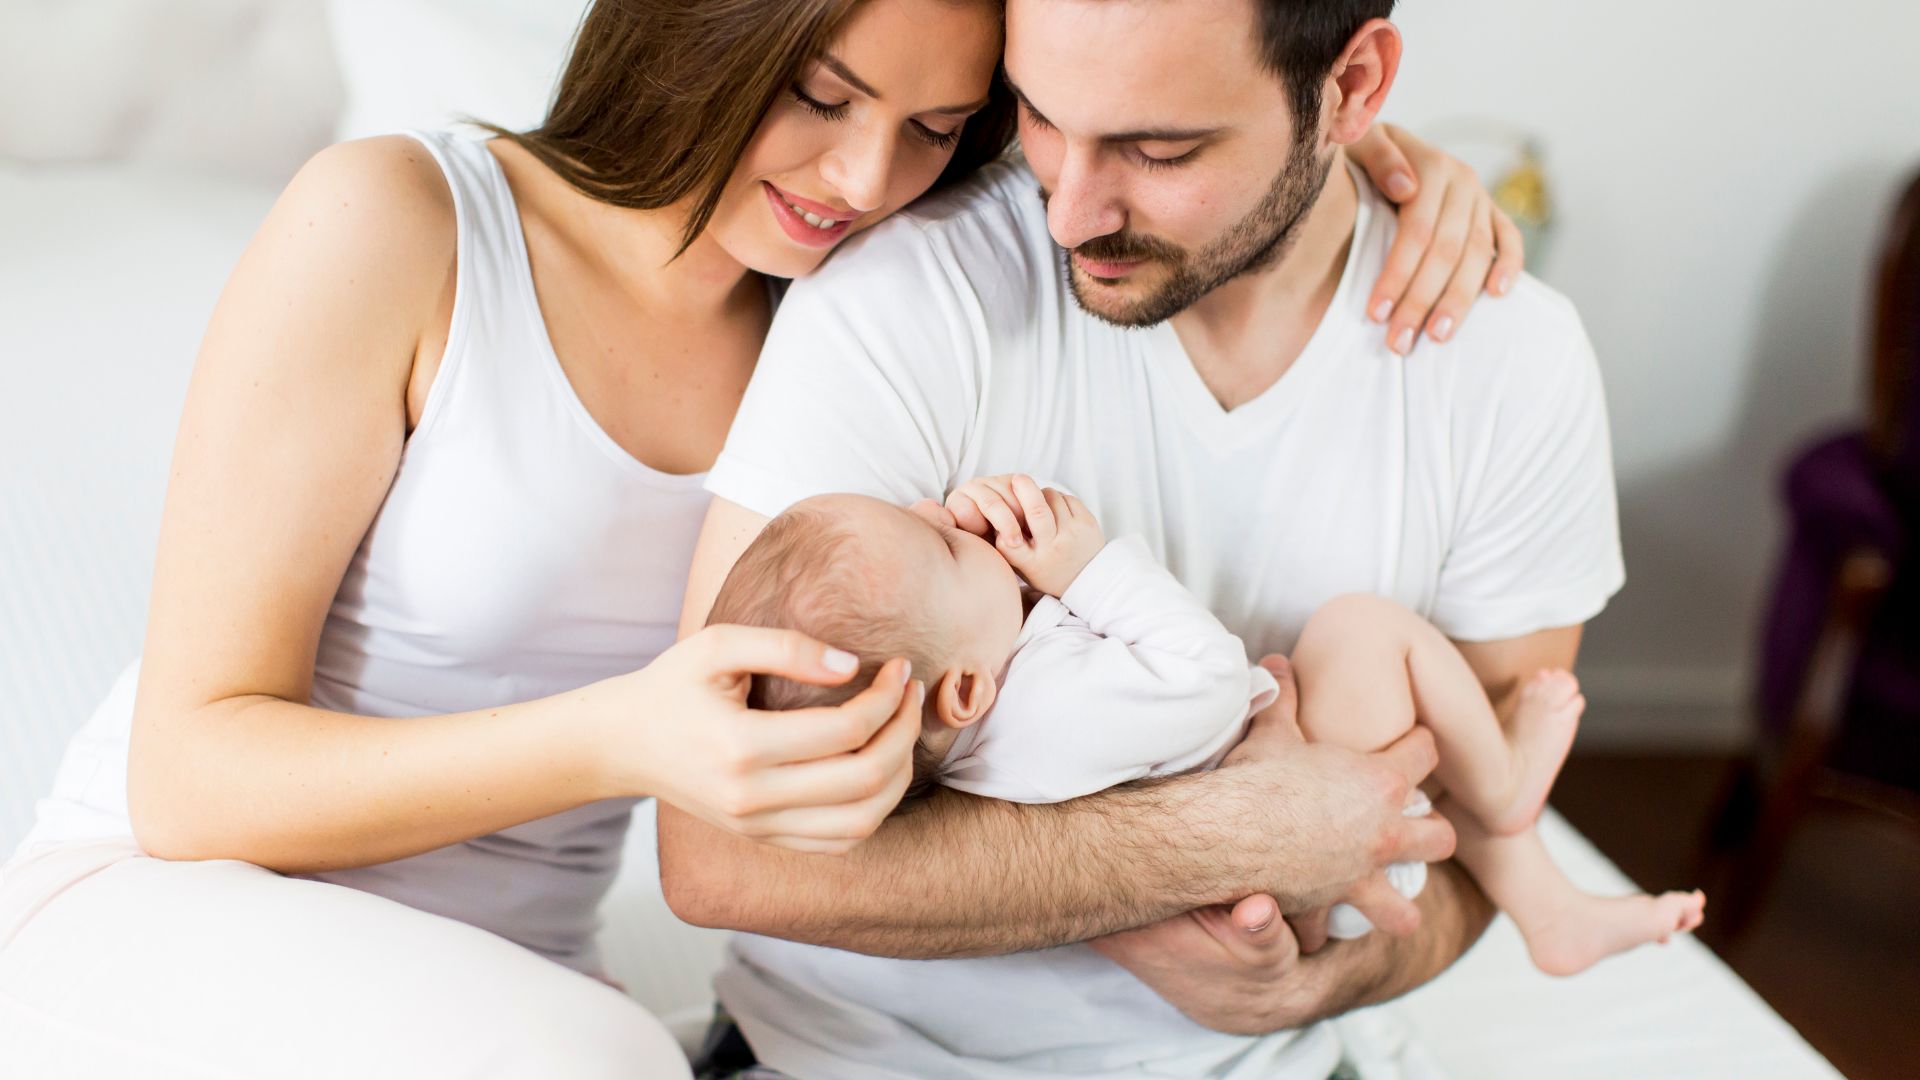 מזוג למשפחה: הרצאה על קבלת תינוק חדש למשפחה בהצלחה